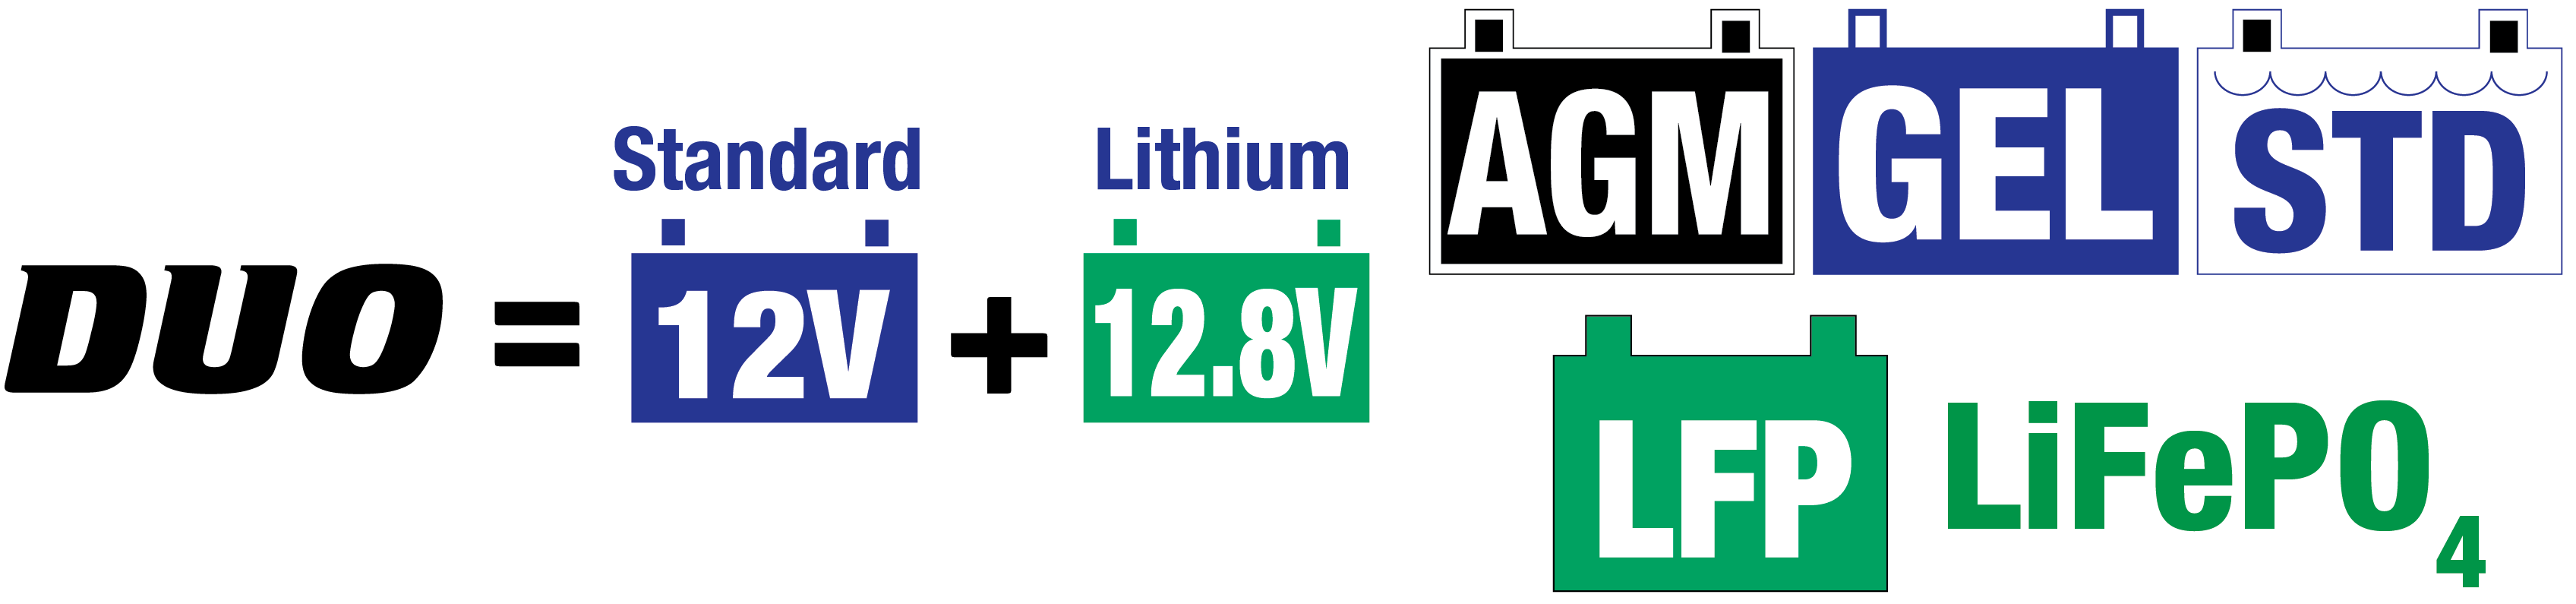 De 10 watt solar lader is ideal voor 12V-loodzuur/12,8V-lithiumaccu’s